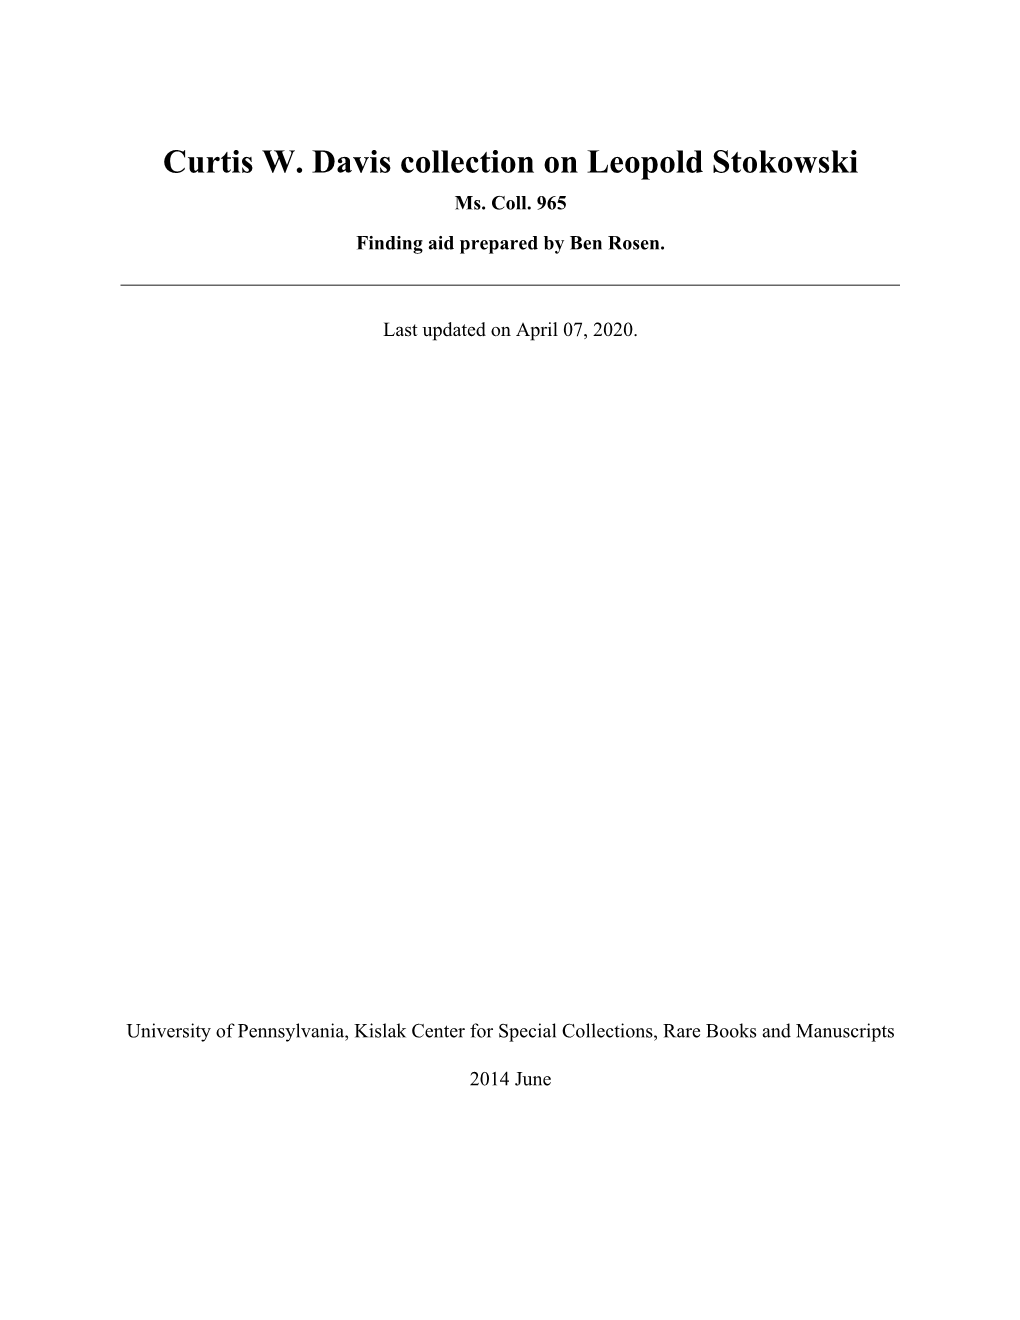 Curtis W. Davis Collection on Leopold Stokowski Ms